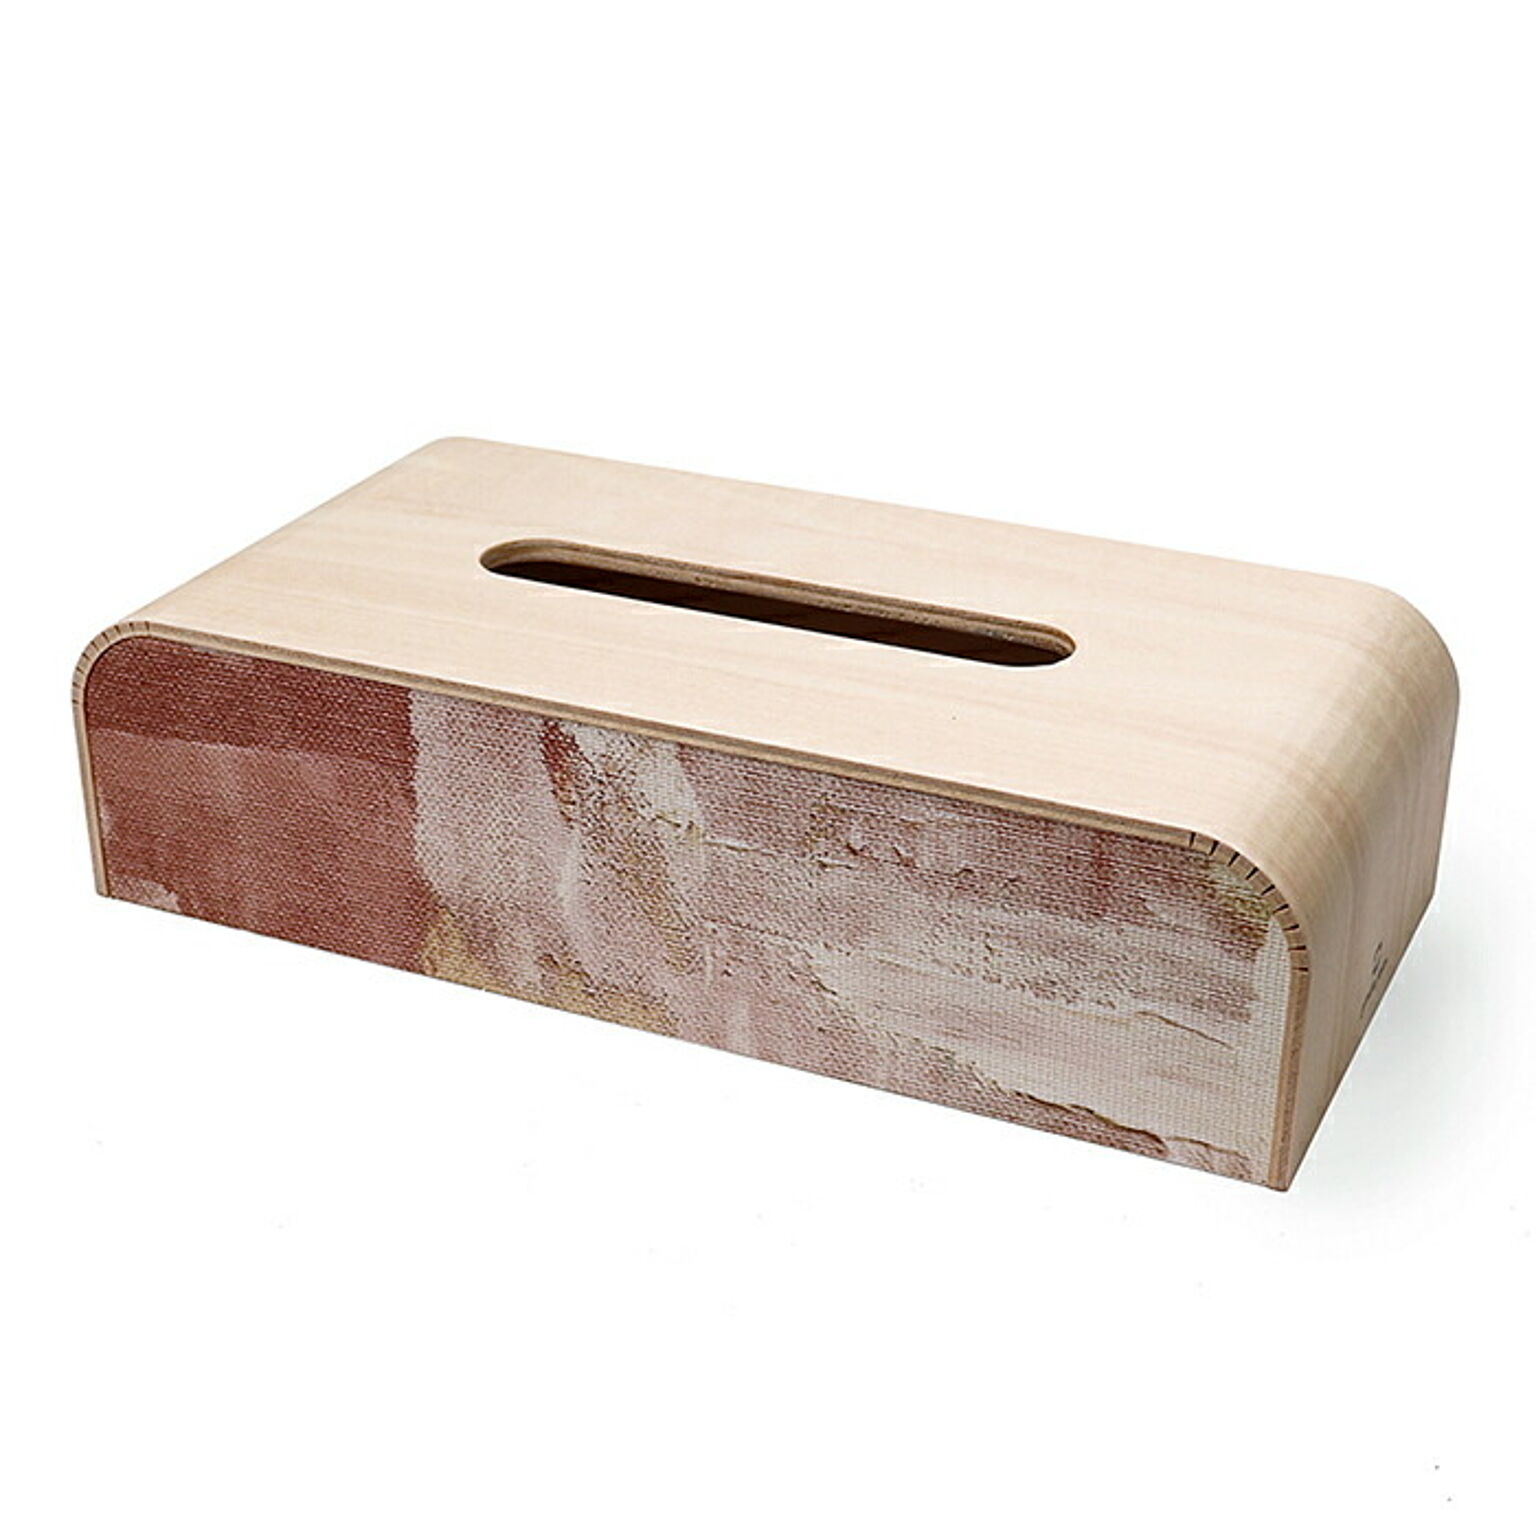 ティッシュケース 北欧 木製 ティッシュカバー ティッシュボックス 日本製 天然木 リビング キッチン YK22-002 ヤマト工芸